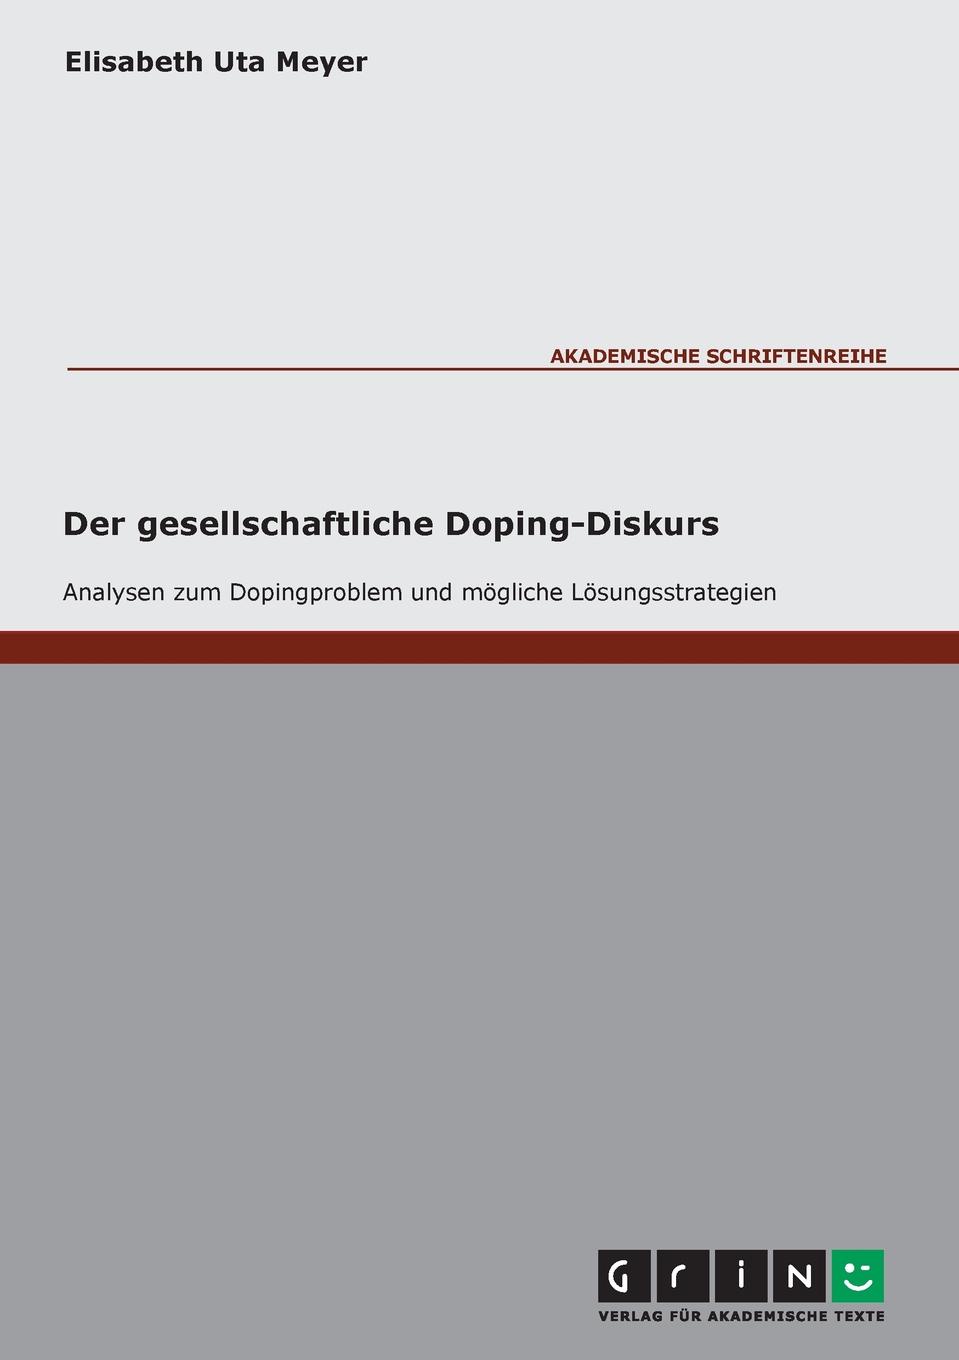 Der gesellschaftliche Doping-Diskurs. Analysen zum Dopingproblem und mogliche Losungsstrategien